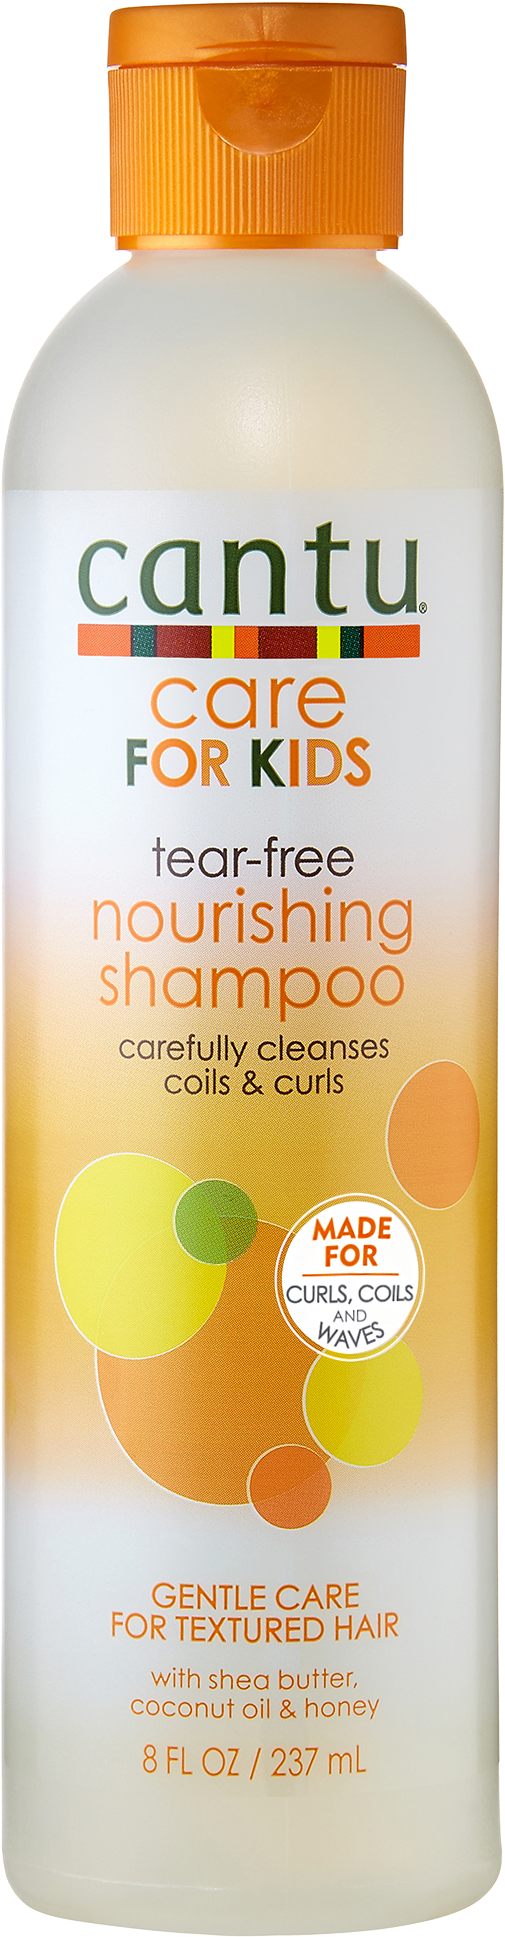 Care for Kids Tear Free Nourishing Shampoo